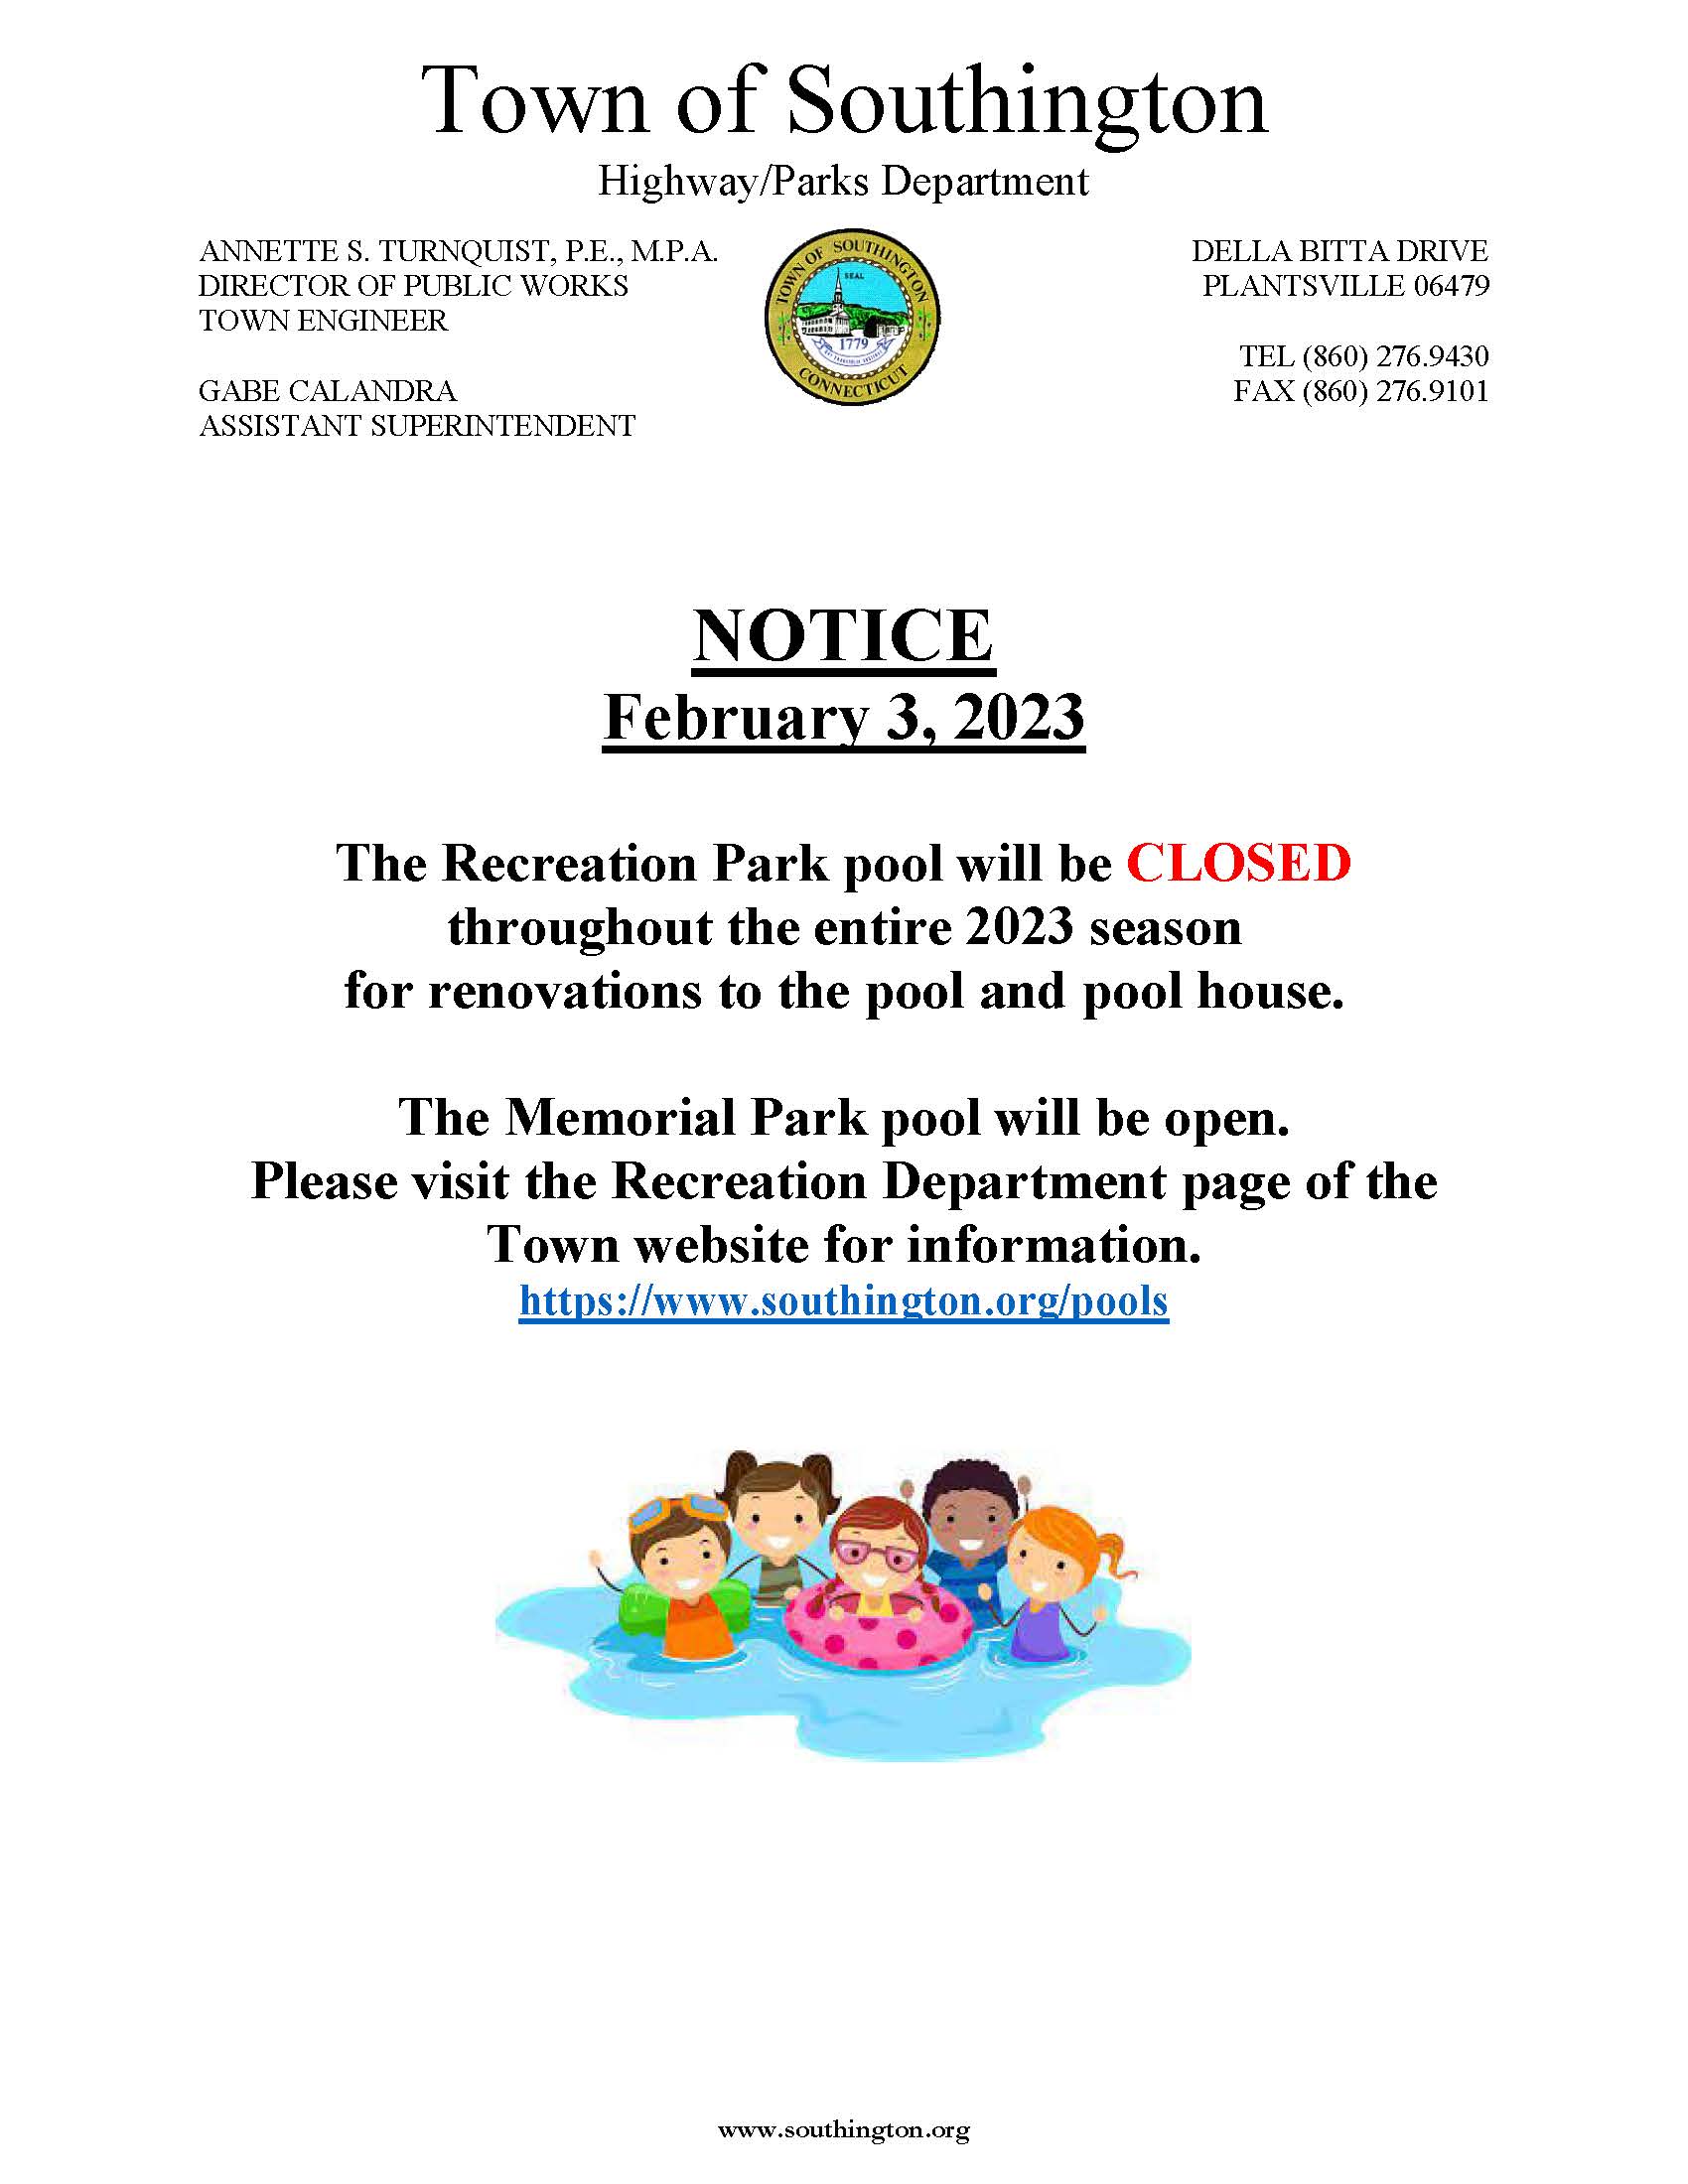 Pool Closure Notice 2-3-23